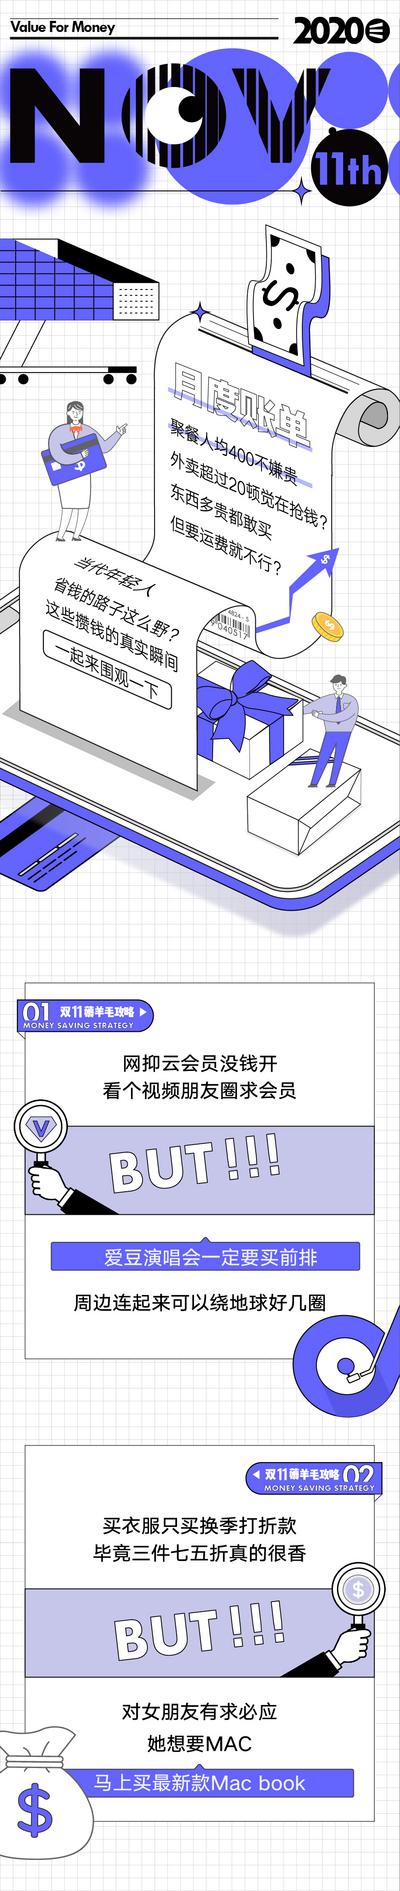 南门网 专题设计 账单 消费 二维码 支付 手机 卷纸 潮流 炫酷